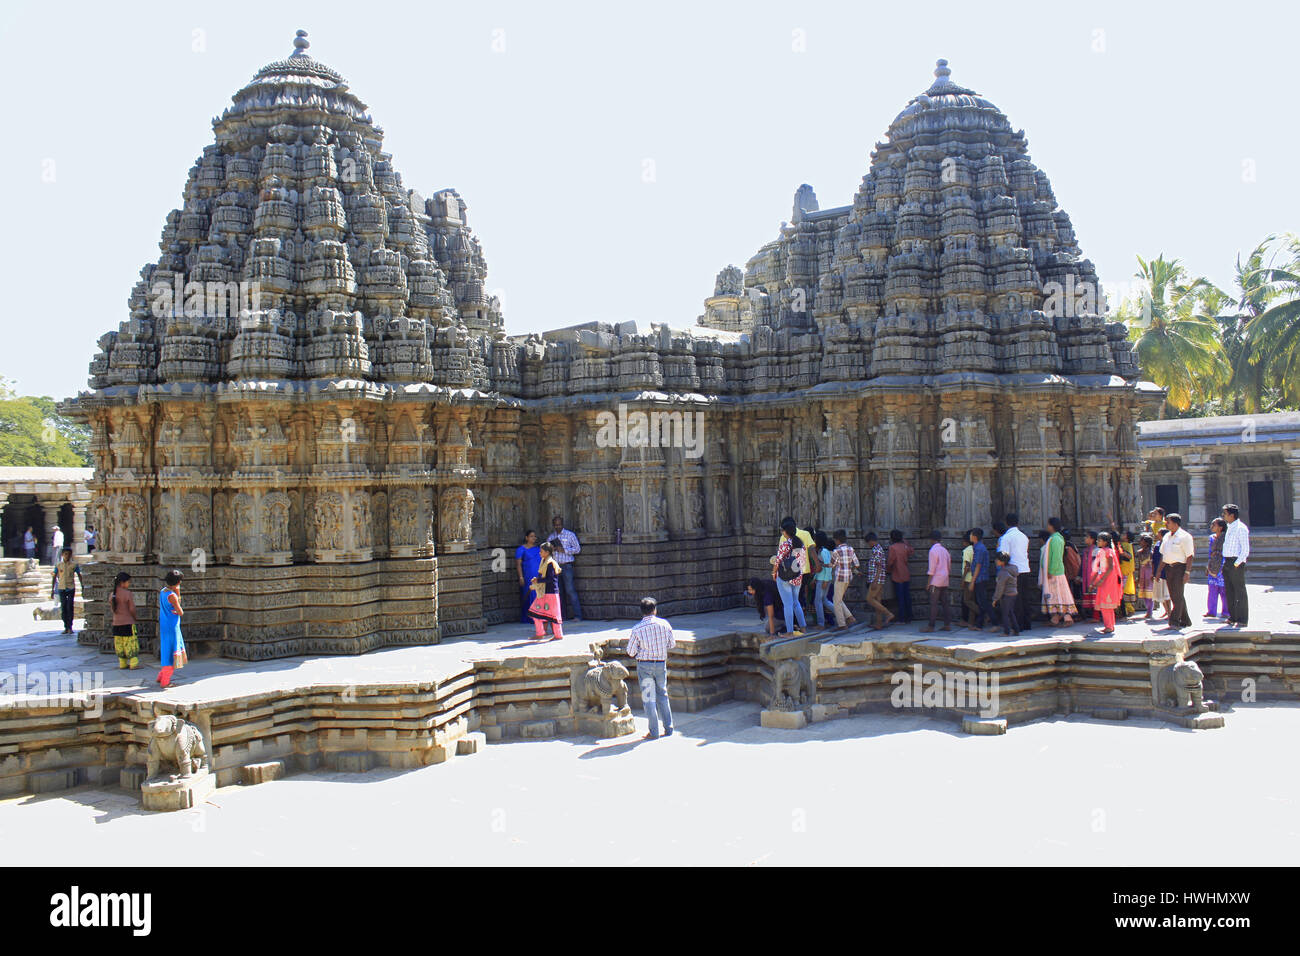 Vue arrière du ganglion stellaire des sanctuaires, des touristes admirant les sculptures sur pierre à Chennakesava Temple Hoysala, Architecture, Somnathpur, Karnataka, Inde Banque D'Images